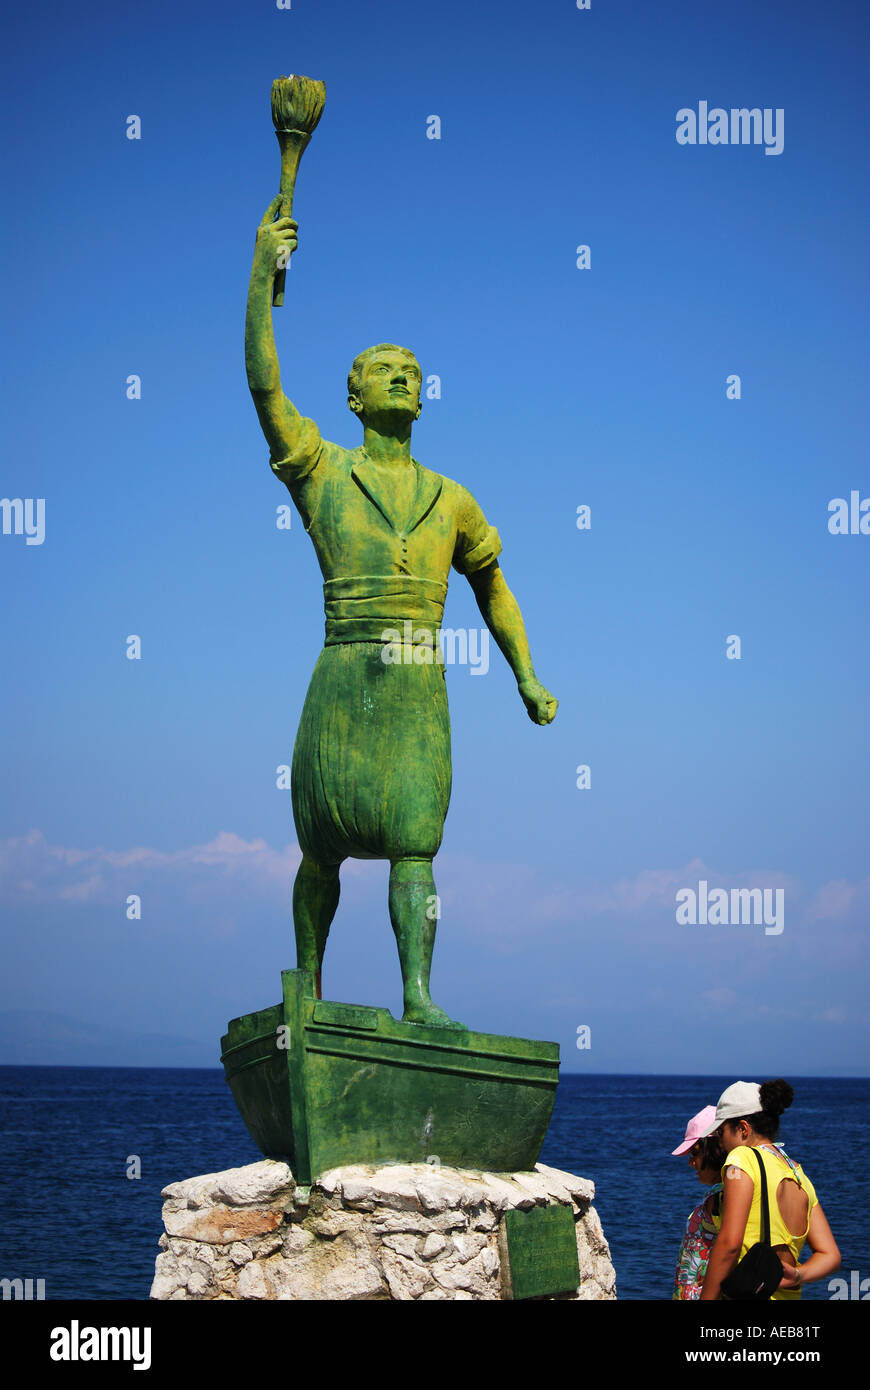 Statue de combattant de la liberté grecque, Geogios Anemogiannis Gaois, Port, Gaois, Paxos, îles Ioniennes, Grèce Banque D'Images